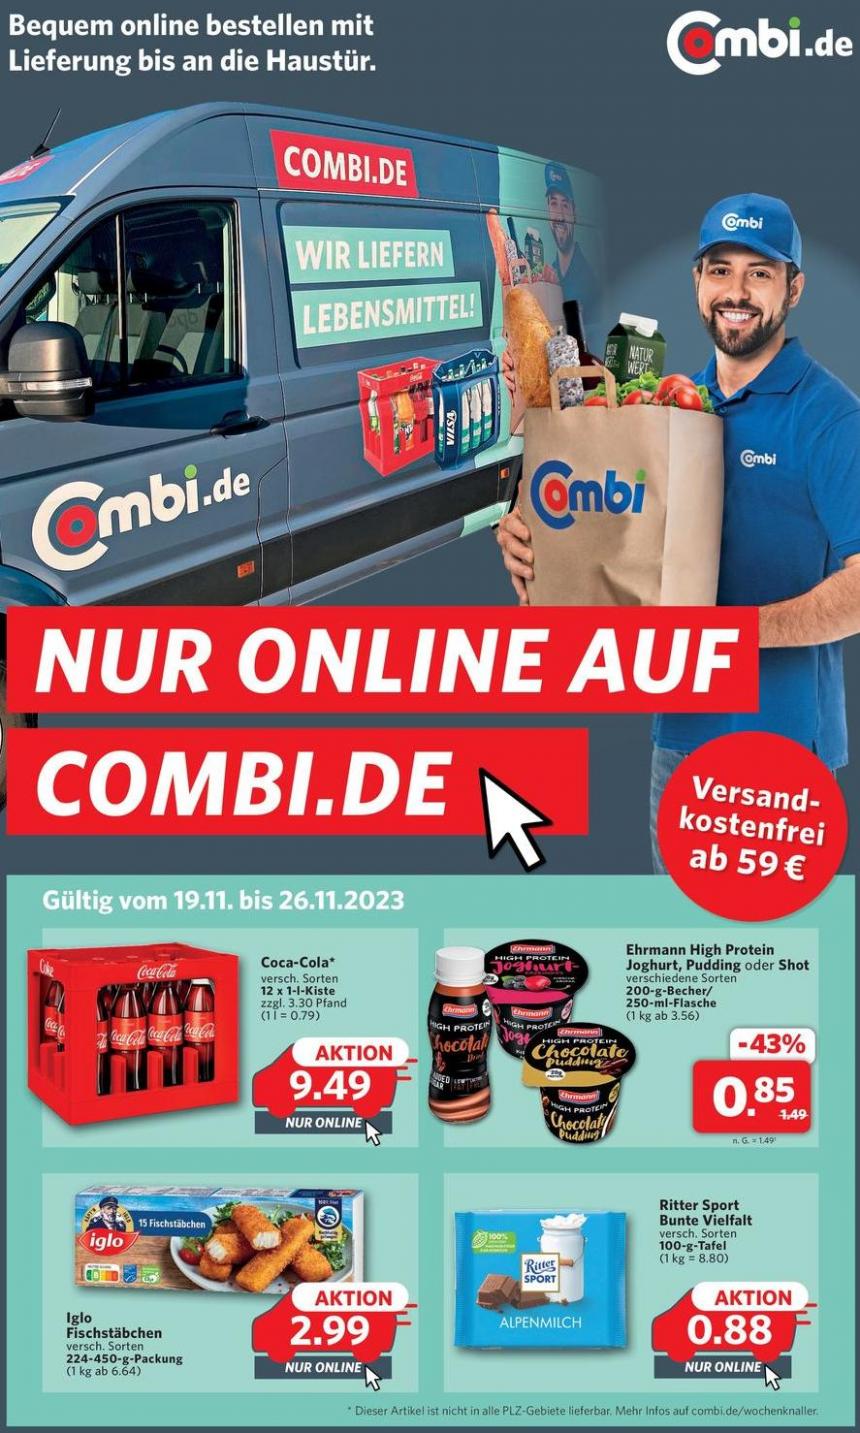 Nur online auf combi.de. Combi Markt (2023-11-26-2023-11-26)